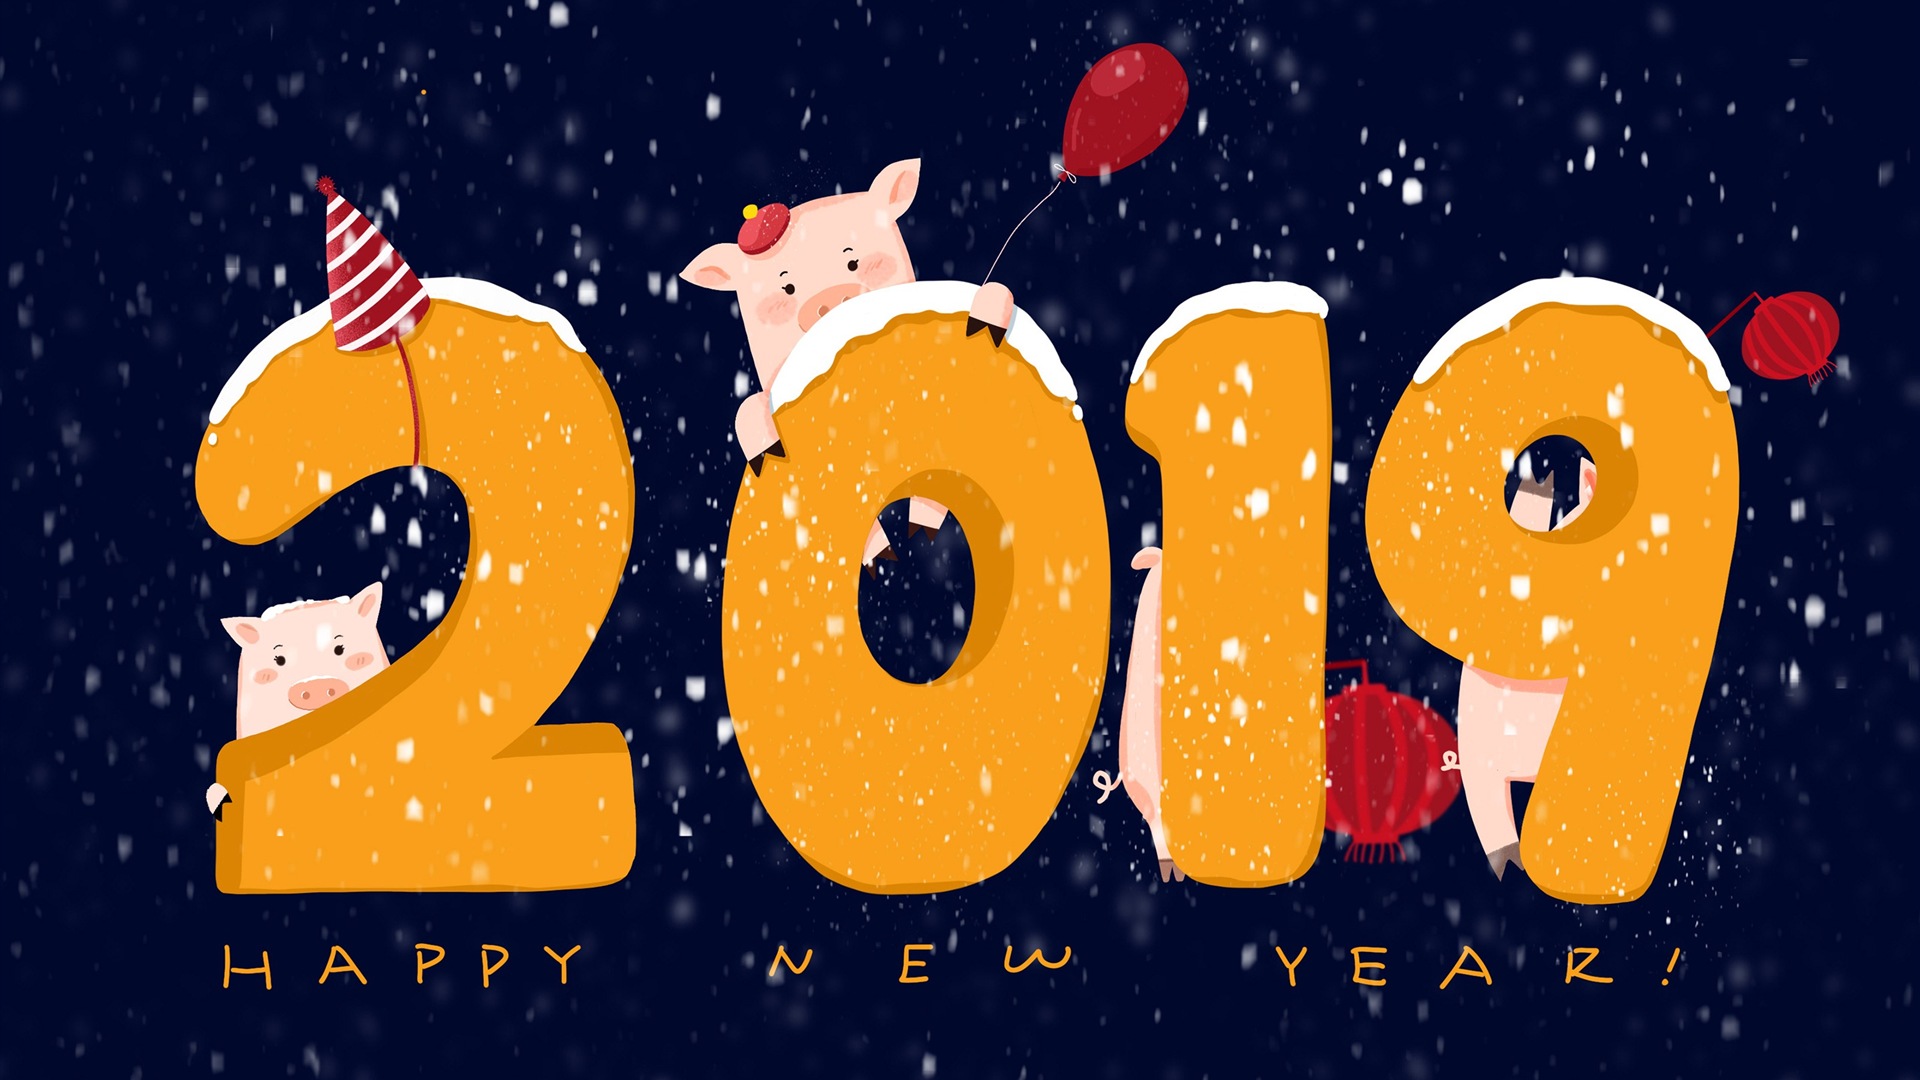 Feliz año nuevo 2019 HD wallpapers #18 - 1920x1080